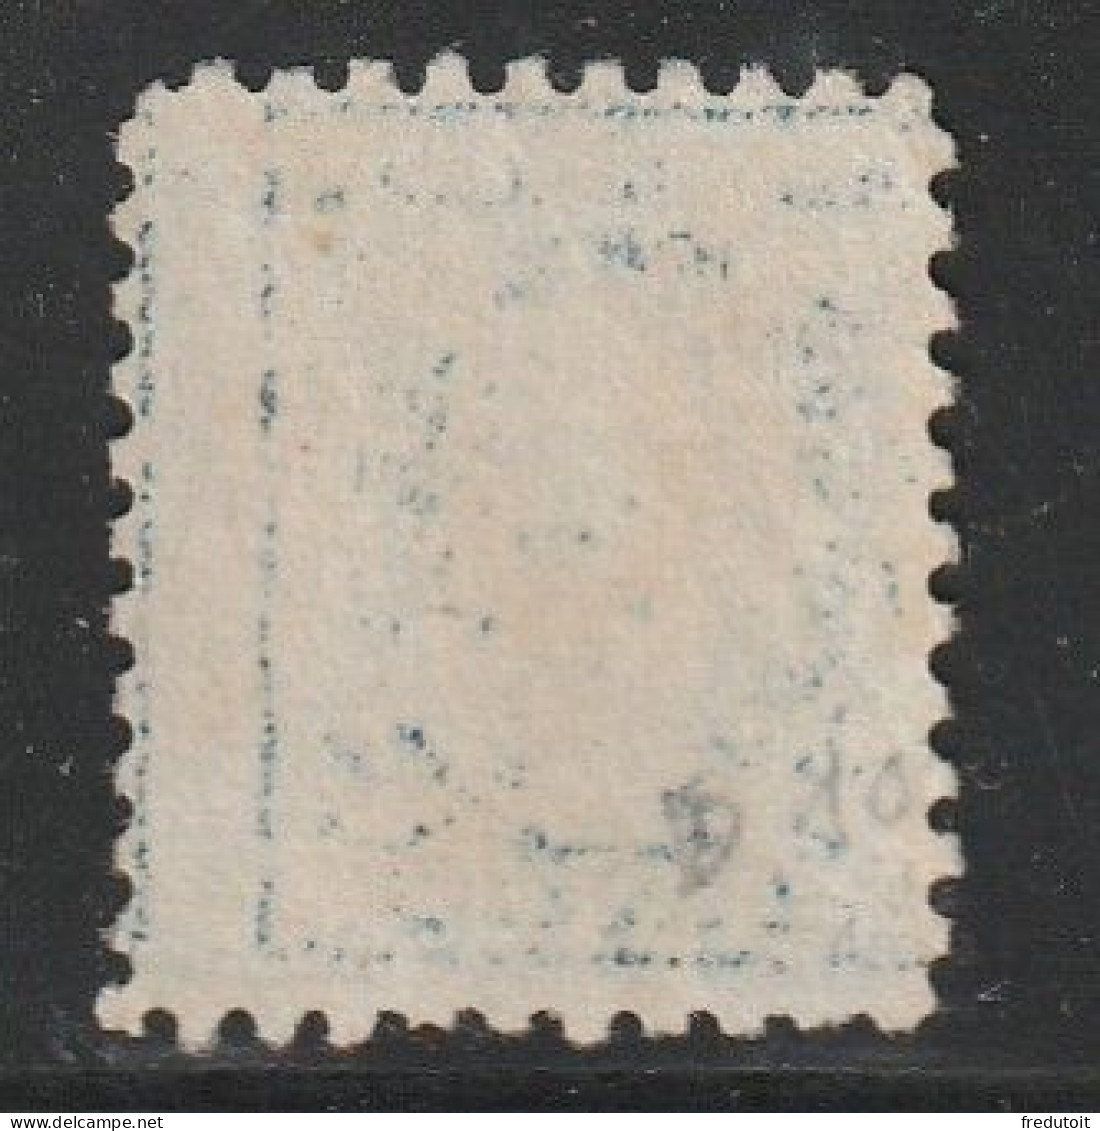 Etats-Unis D'Amérique - N°203 * (1916-19) G.Washington : 5c Bleu (dentelé 10) Sans Filigrane - Usados